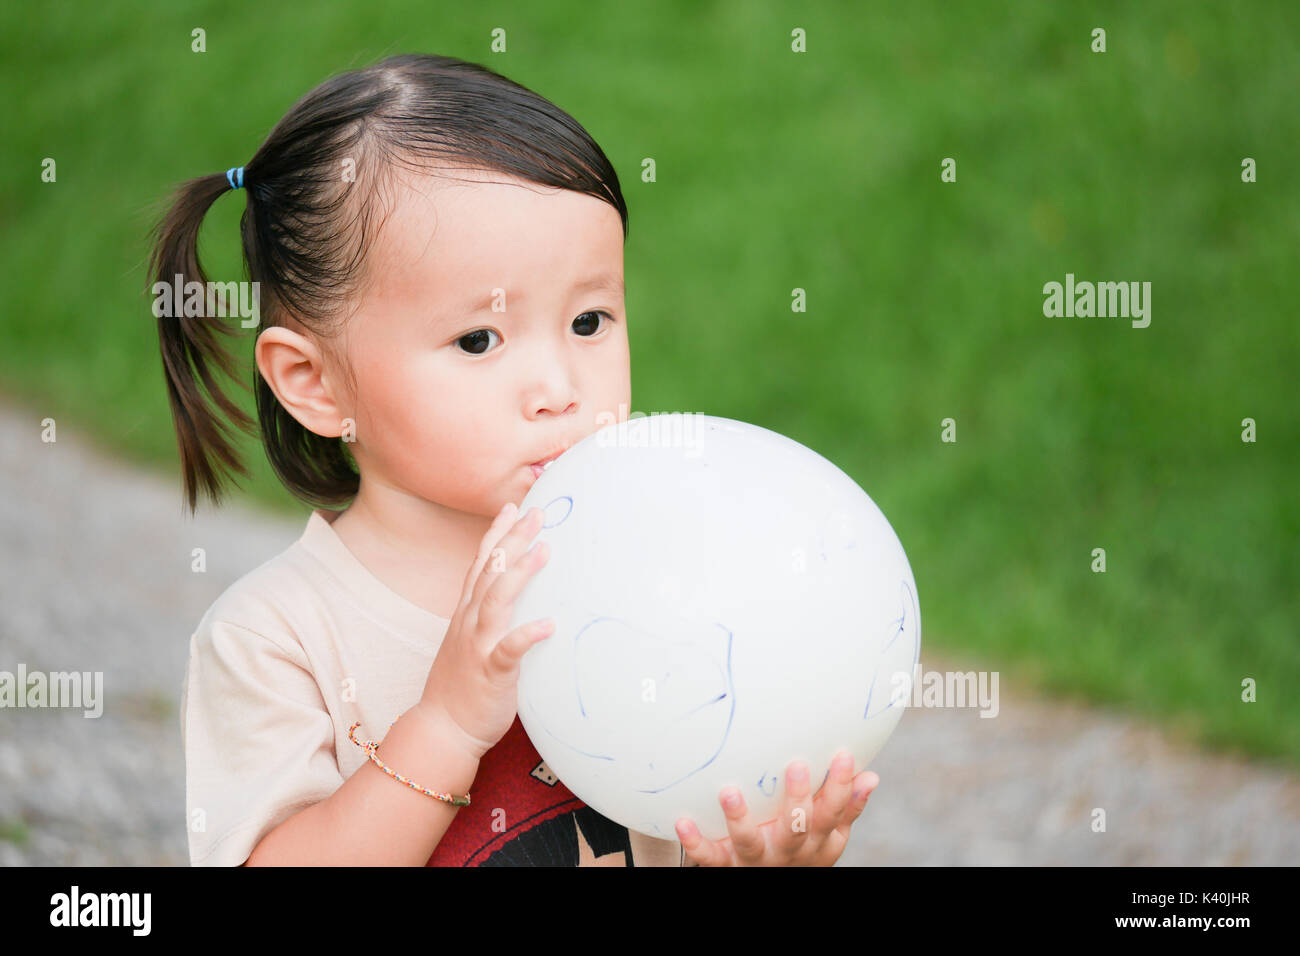 Blowing up balloon:close up portrait of little girl Blowing up un ballon dans le jardin vert Banque D'Images